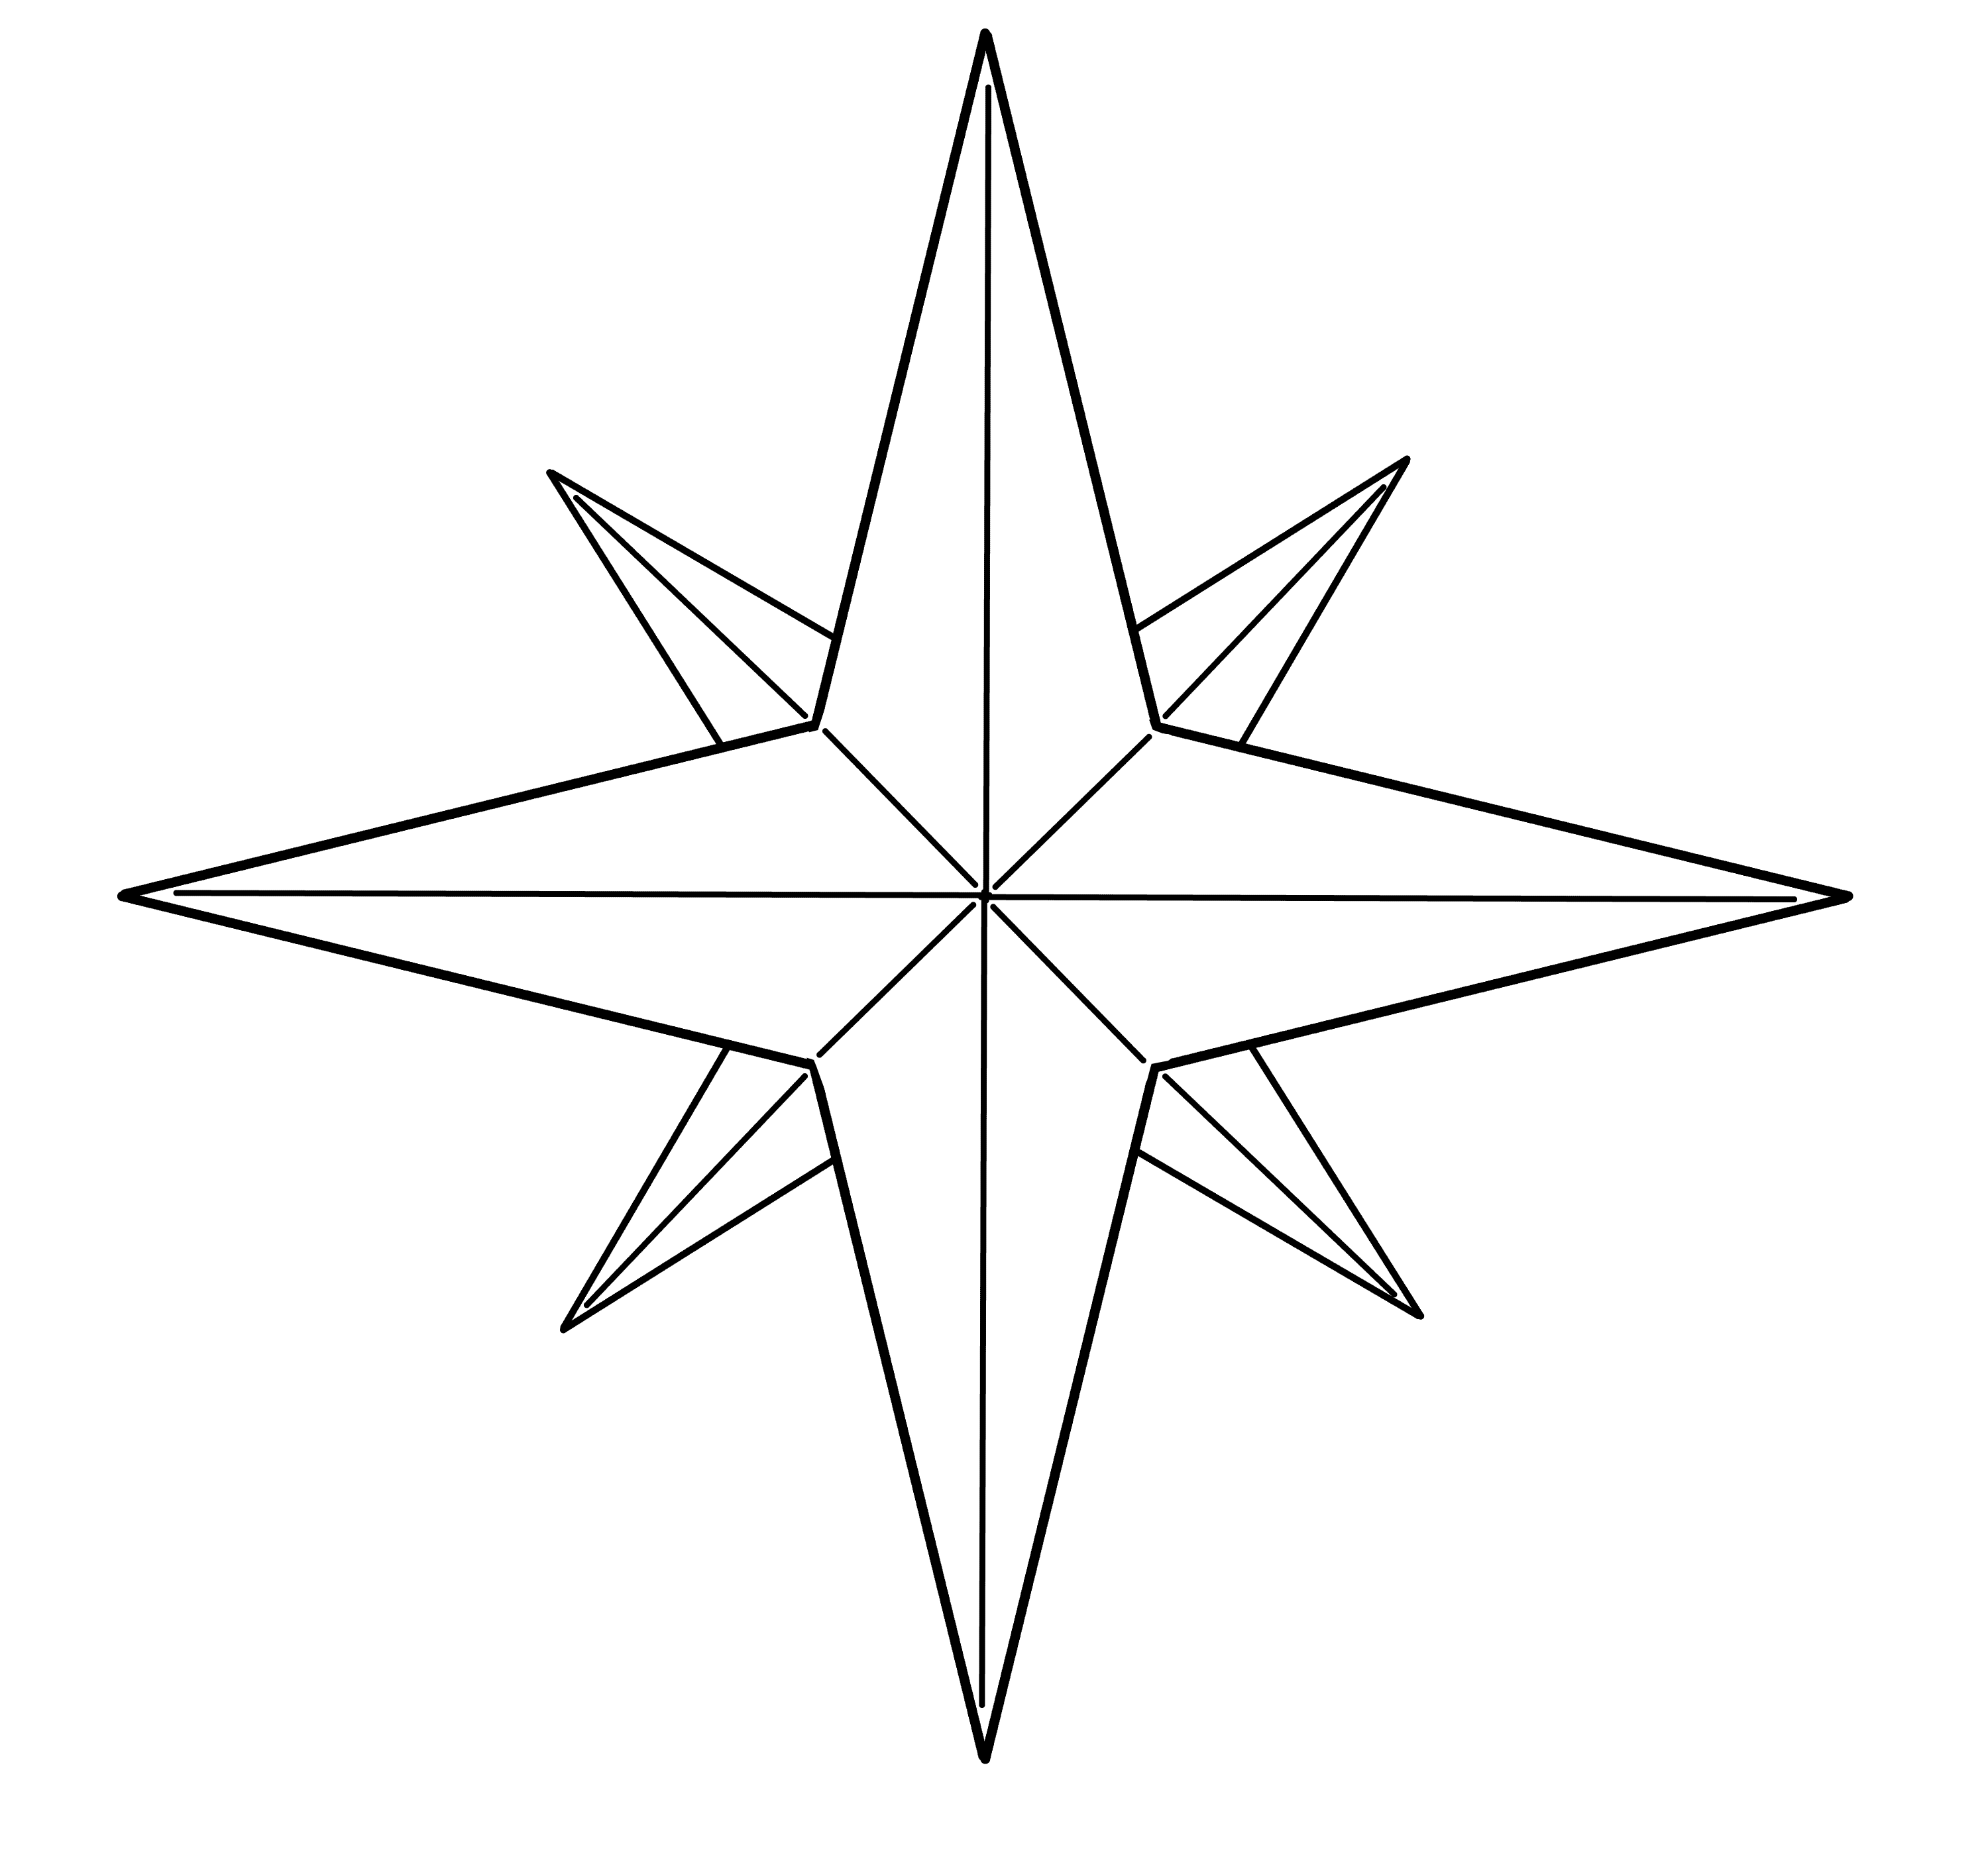 図形を描いてみる 三角形と星 メディバンペイント Medibang Paint